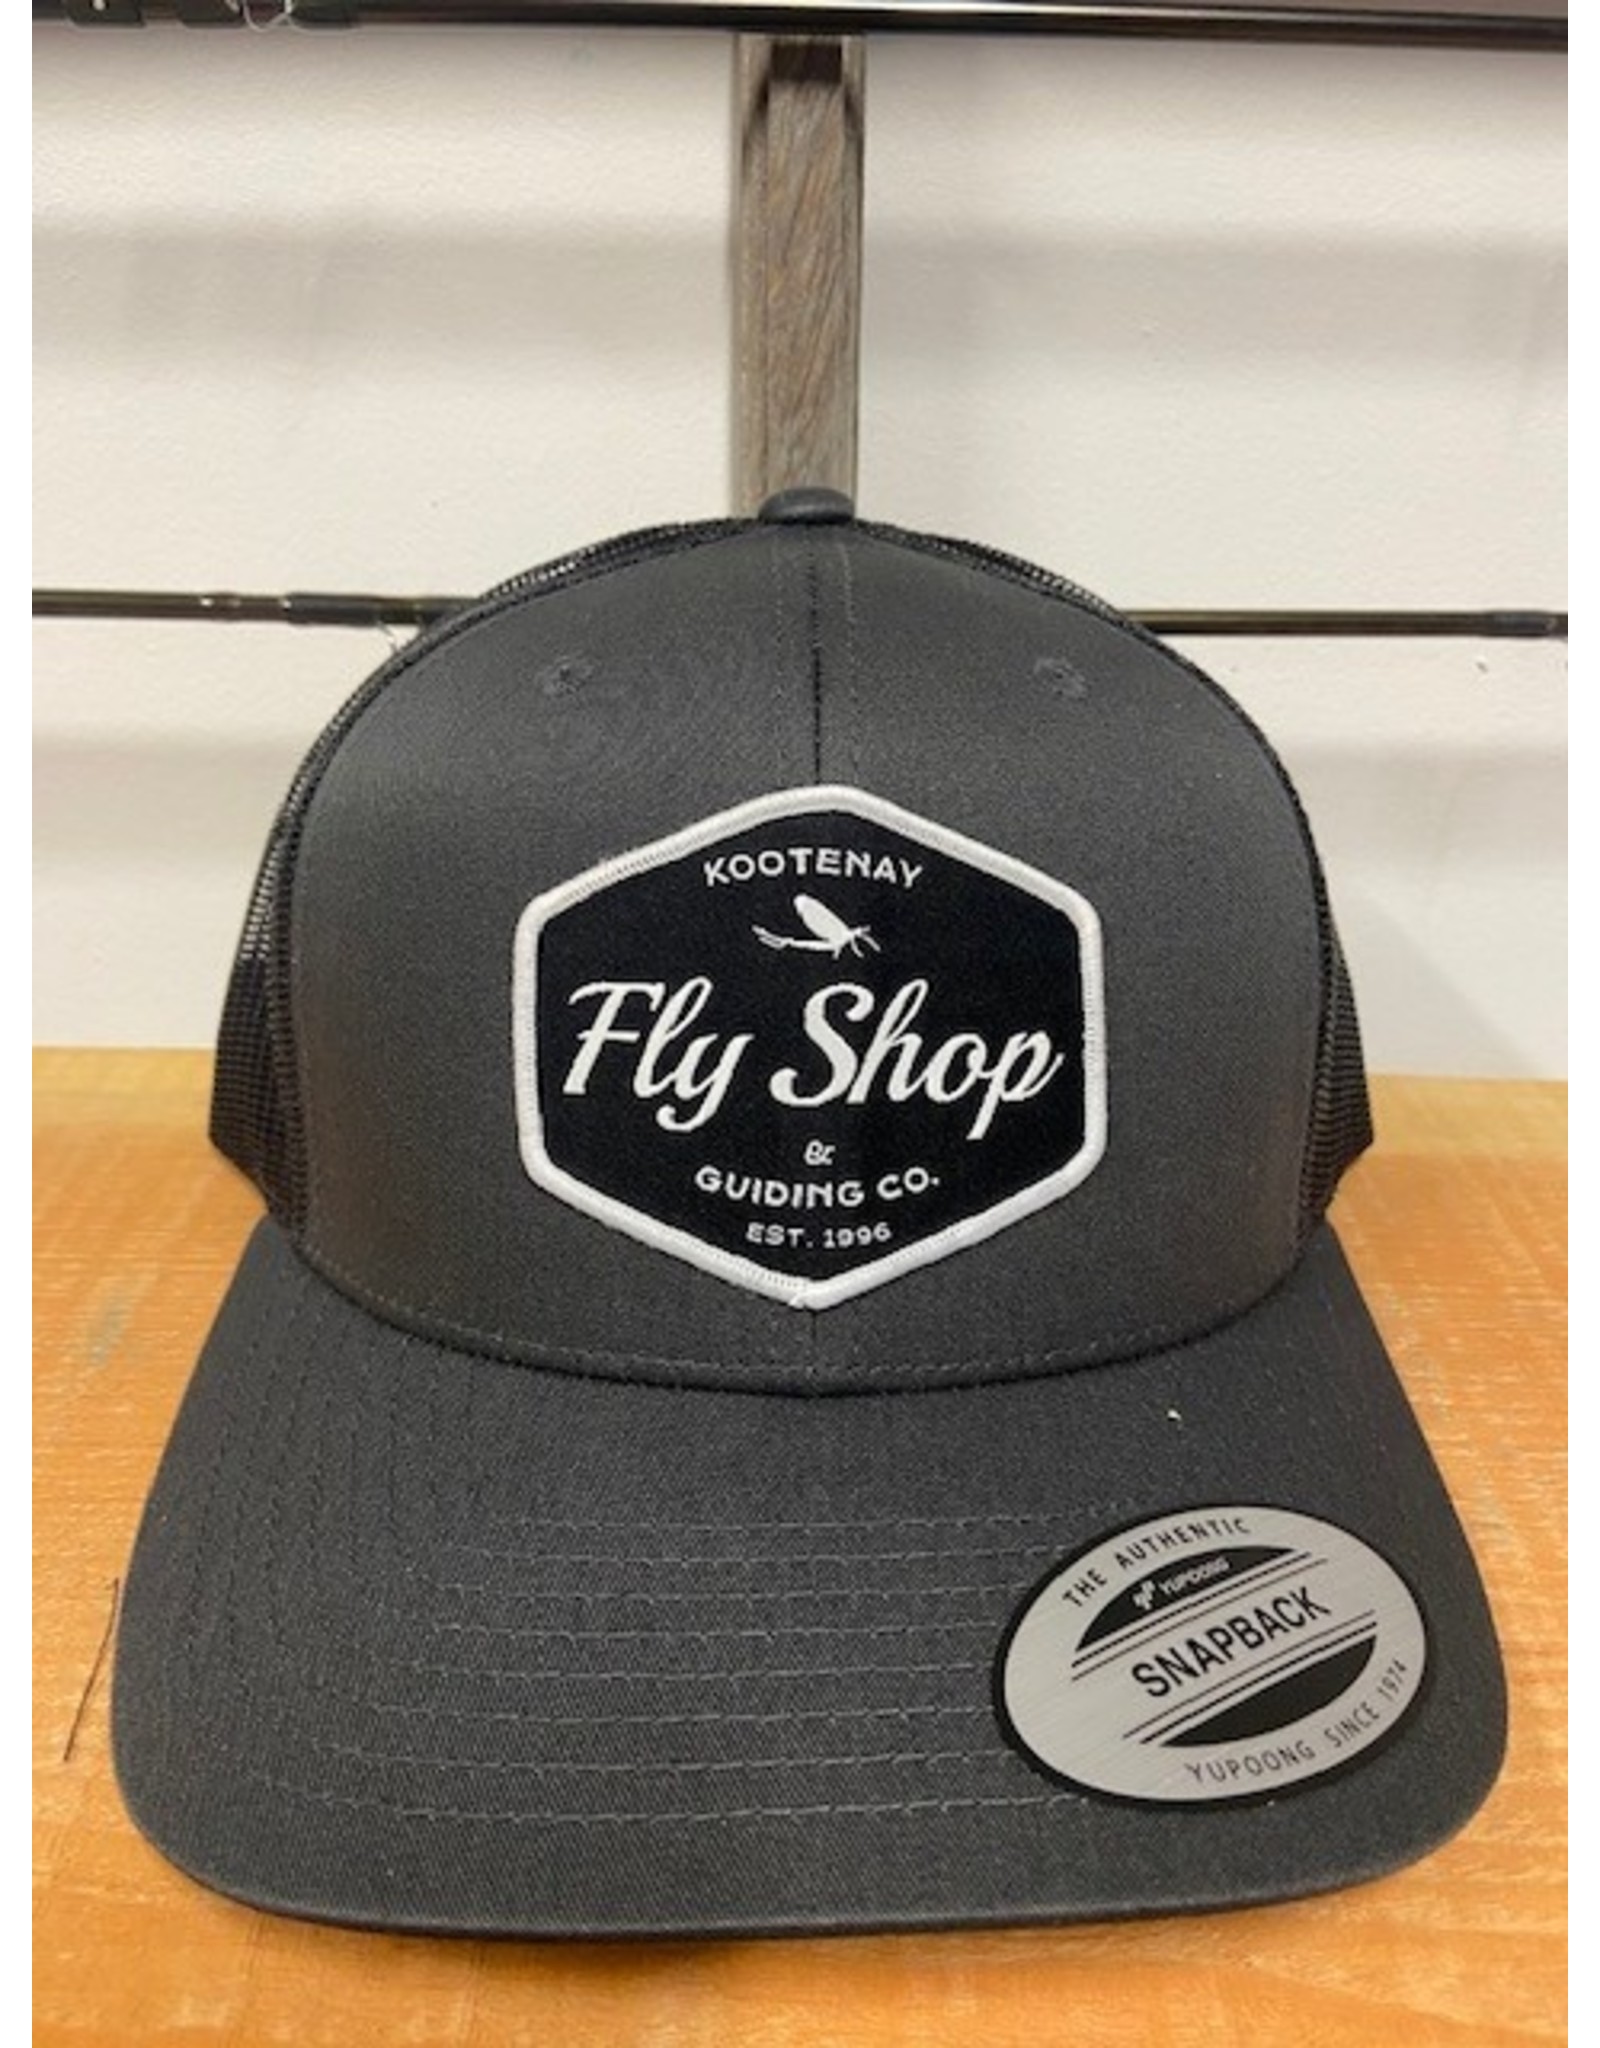 Retro Trucker Hats - Kootenay Fly Shop & Guiding Company